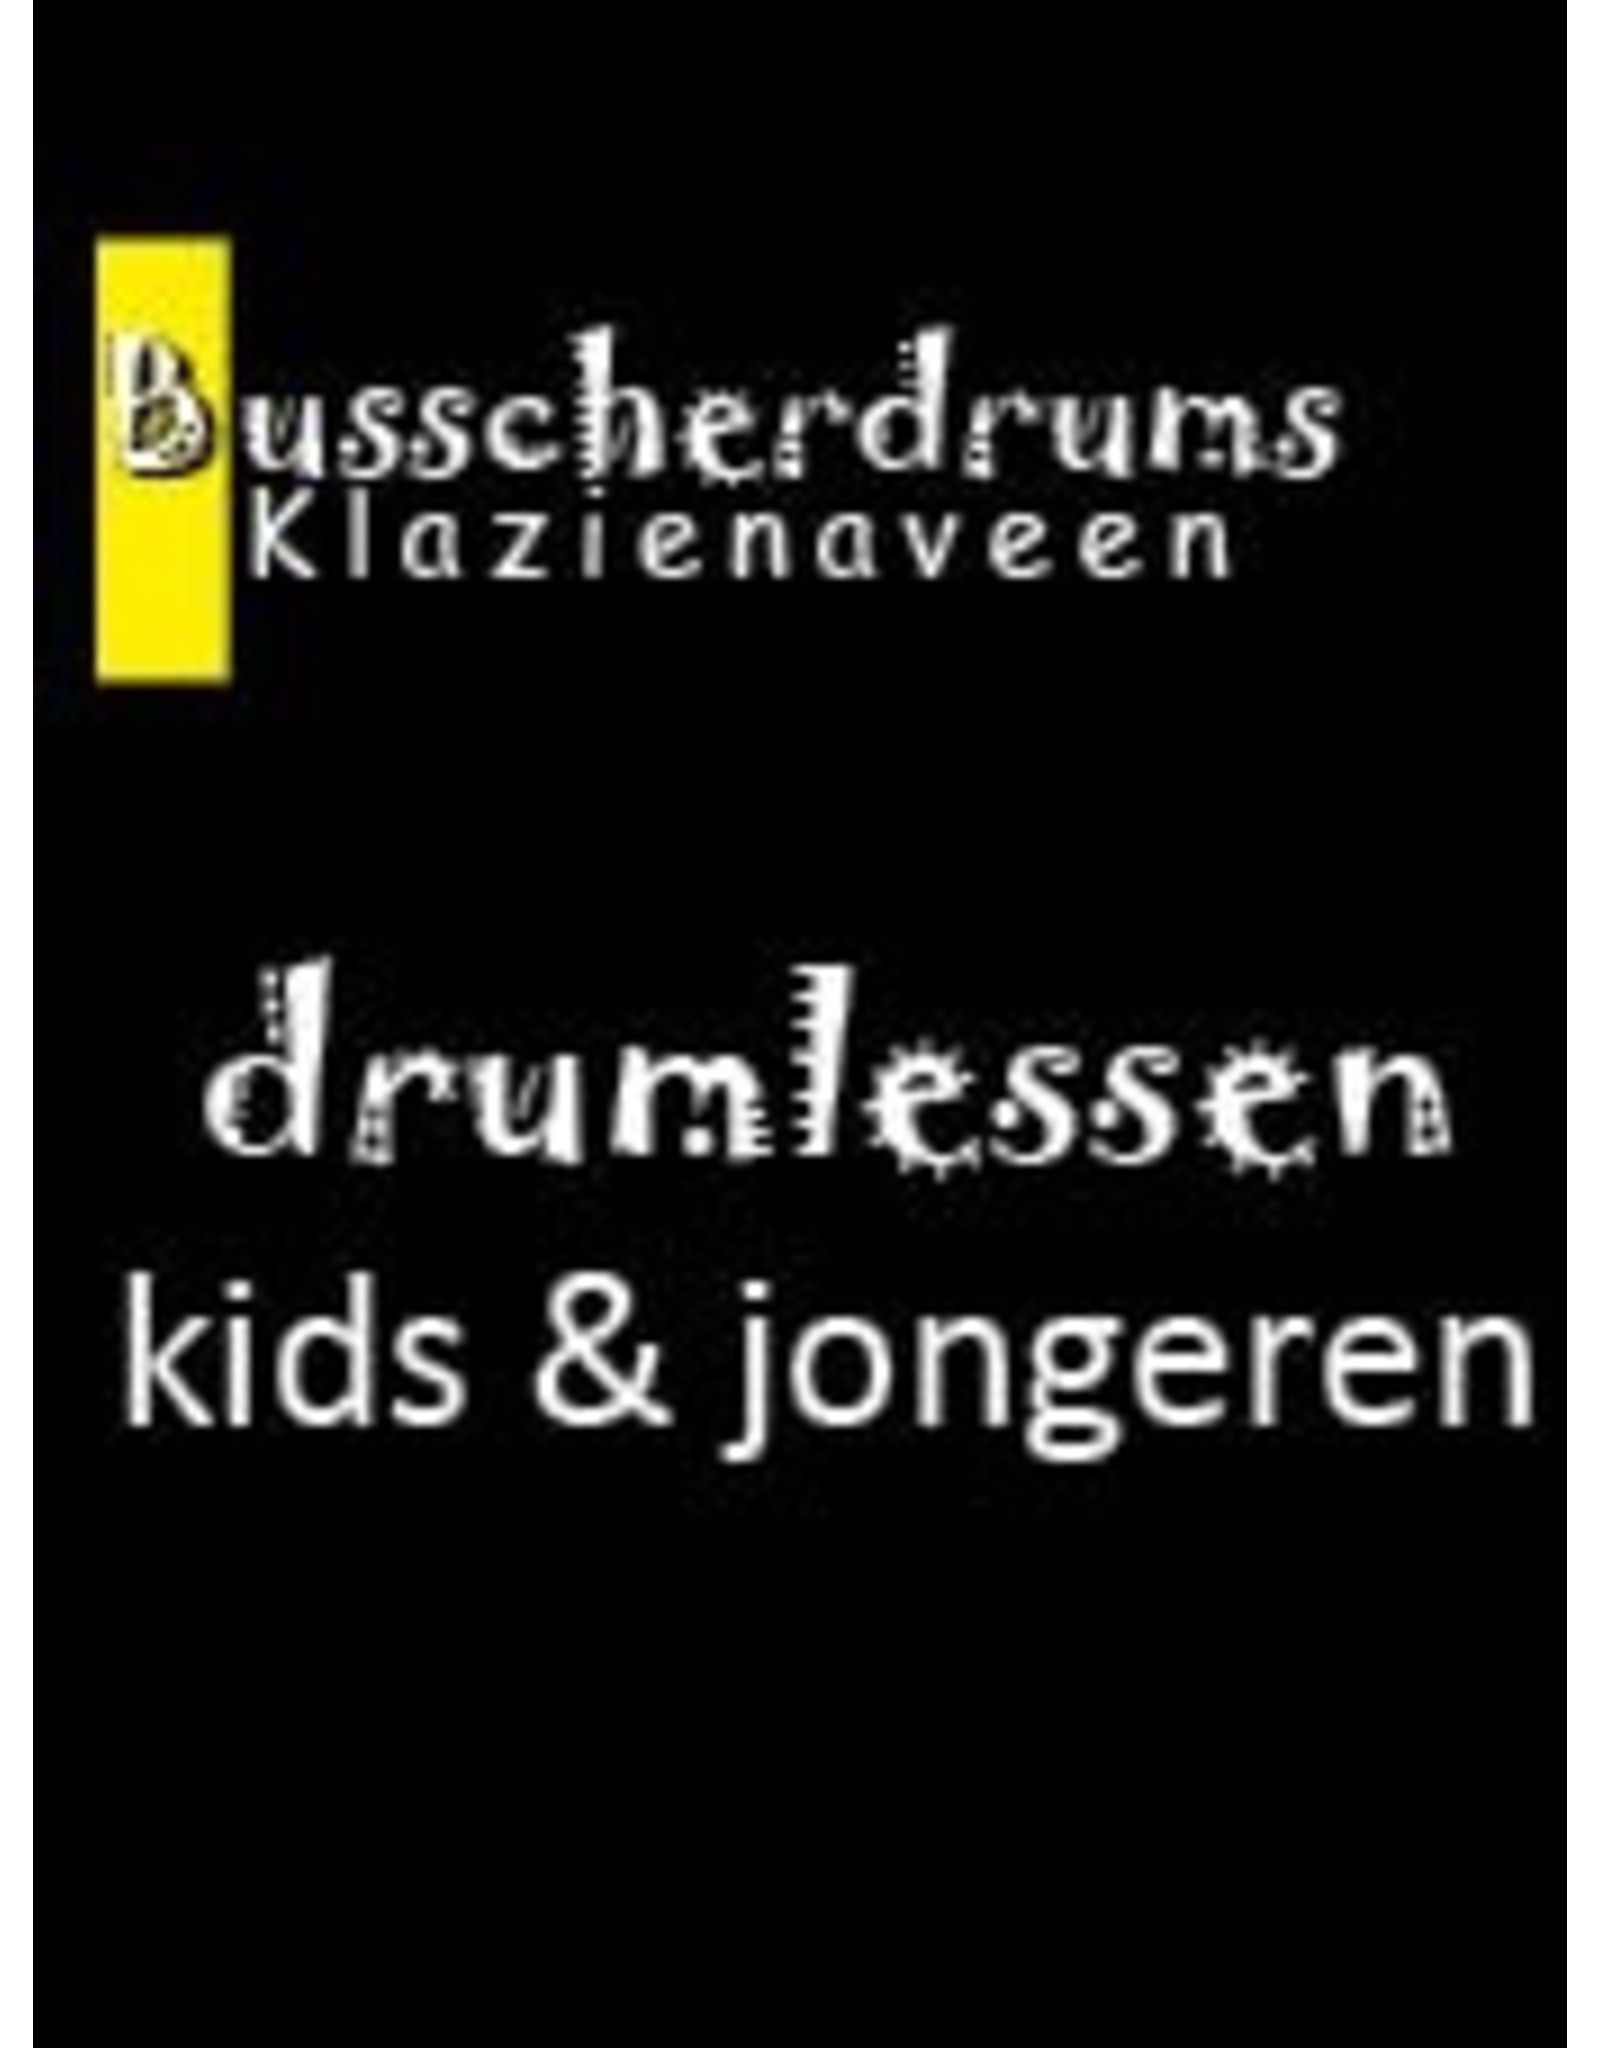 Busscherdrums Drum lessons FLEX-10Less card 30 minutes individual drum lessons kids & adolescents 901